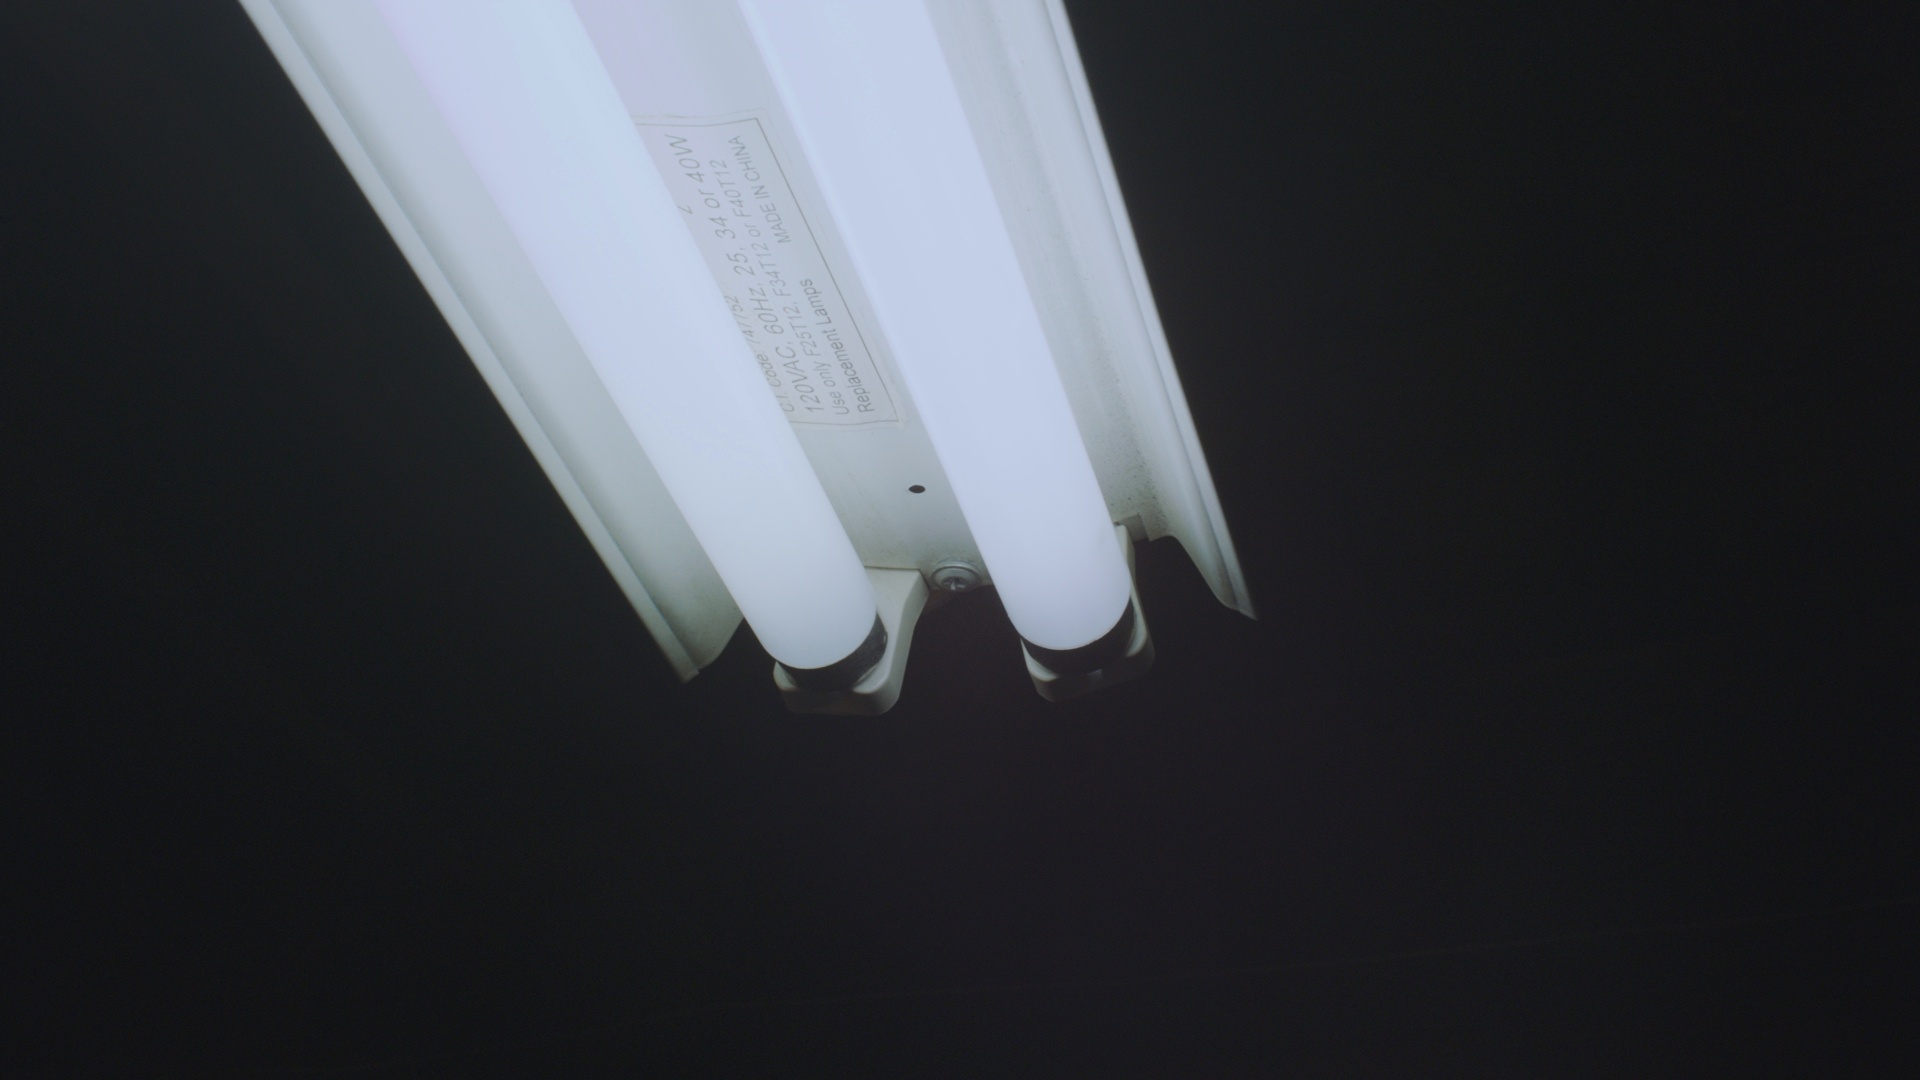 Closeup view of workbench lights